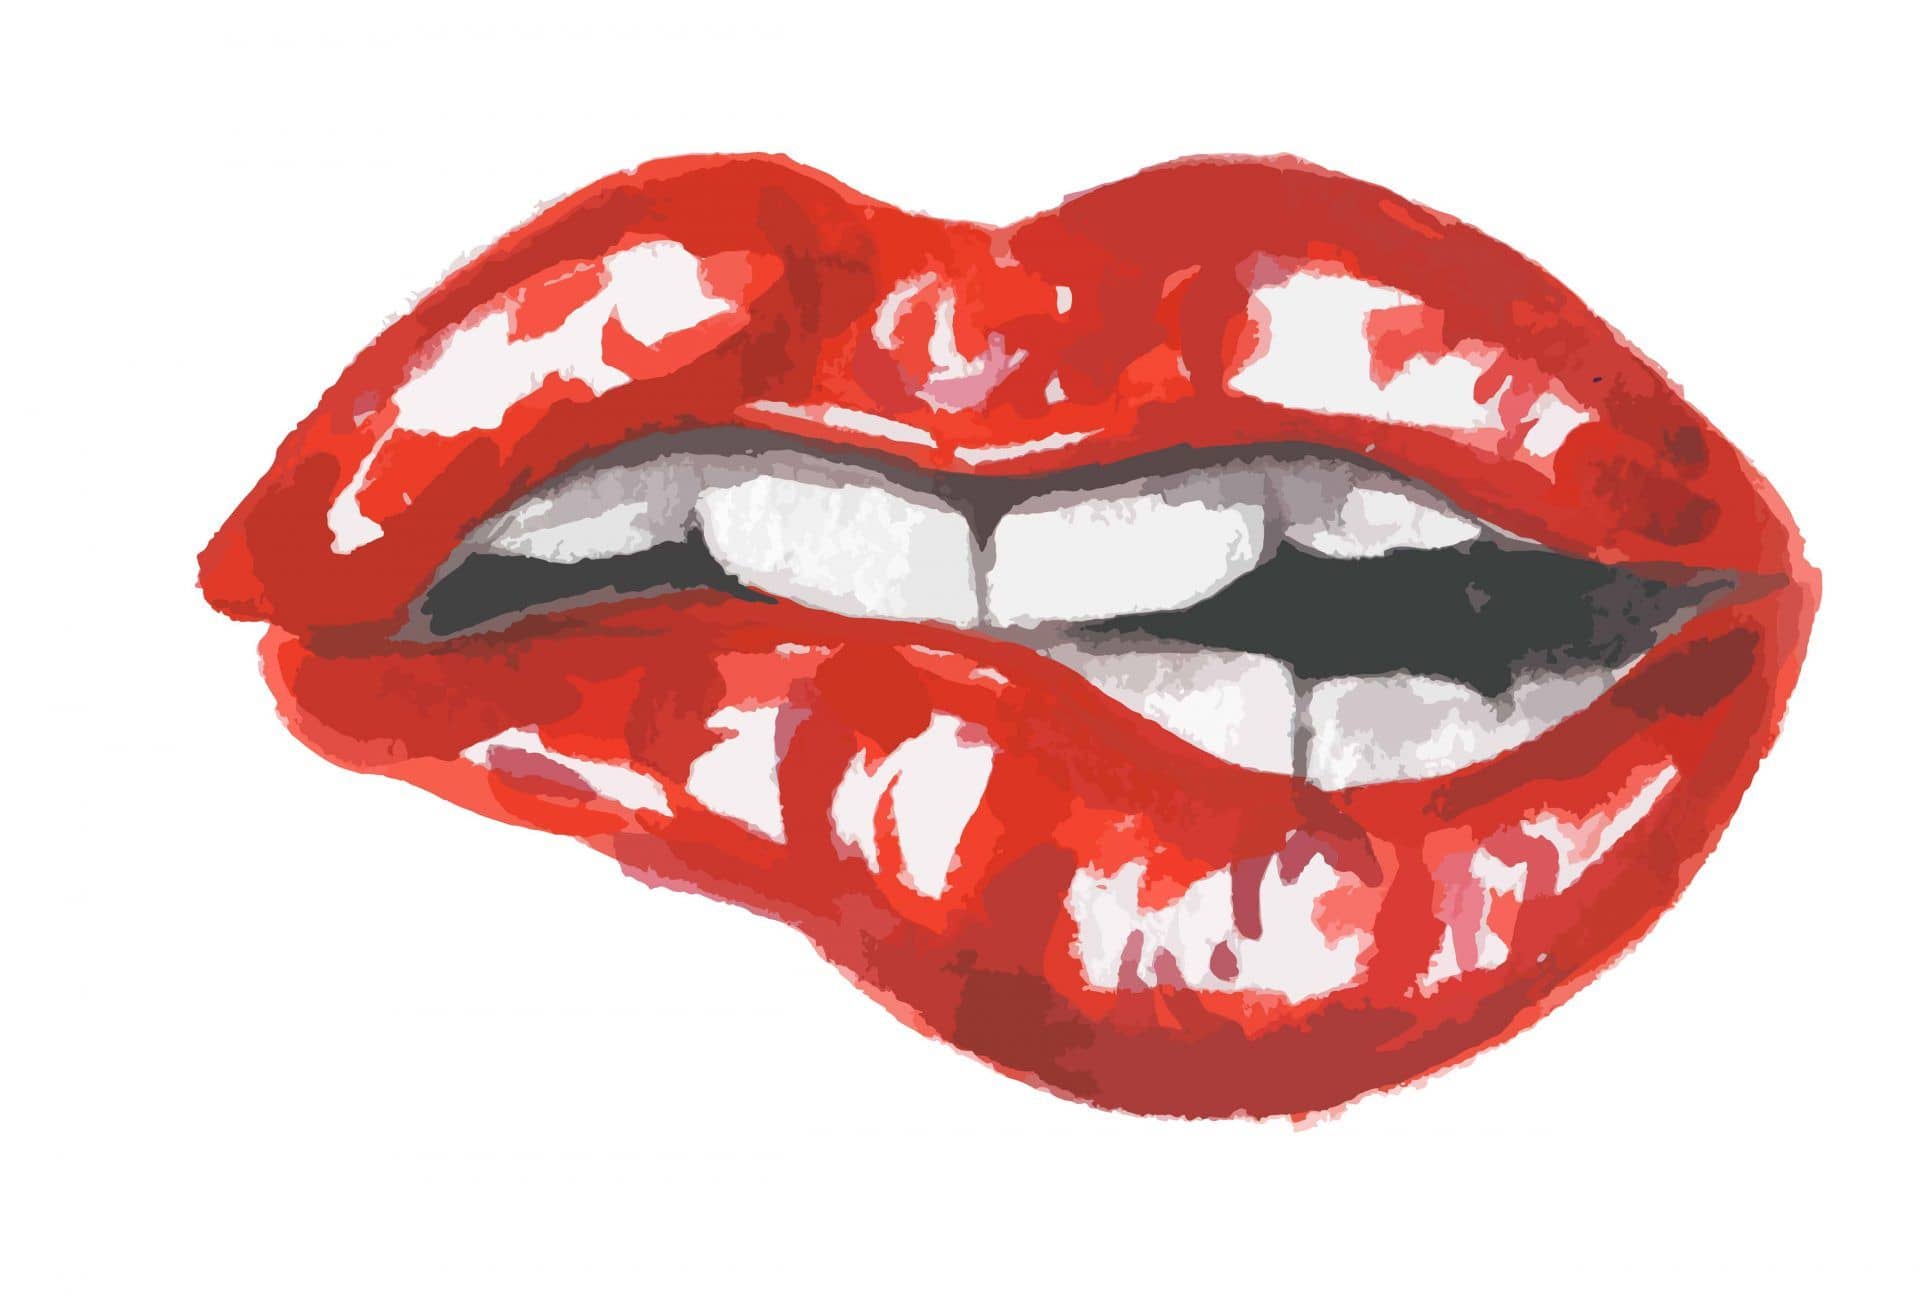 Watercolor biting lip